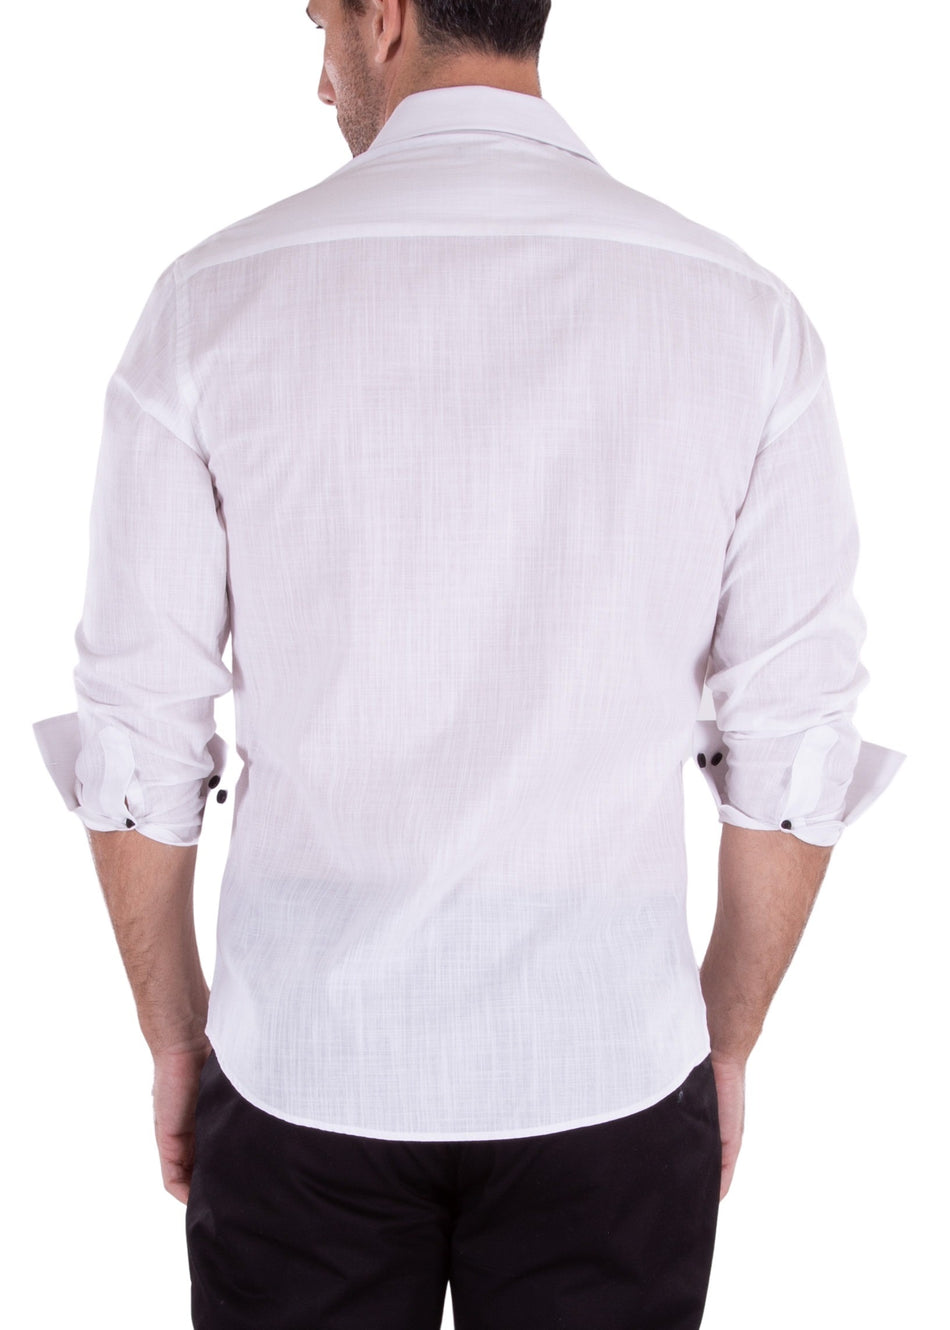 232234 - White Button Up Long Sleeve Dress Shirt